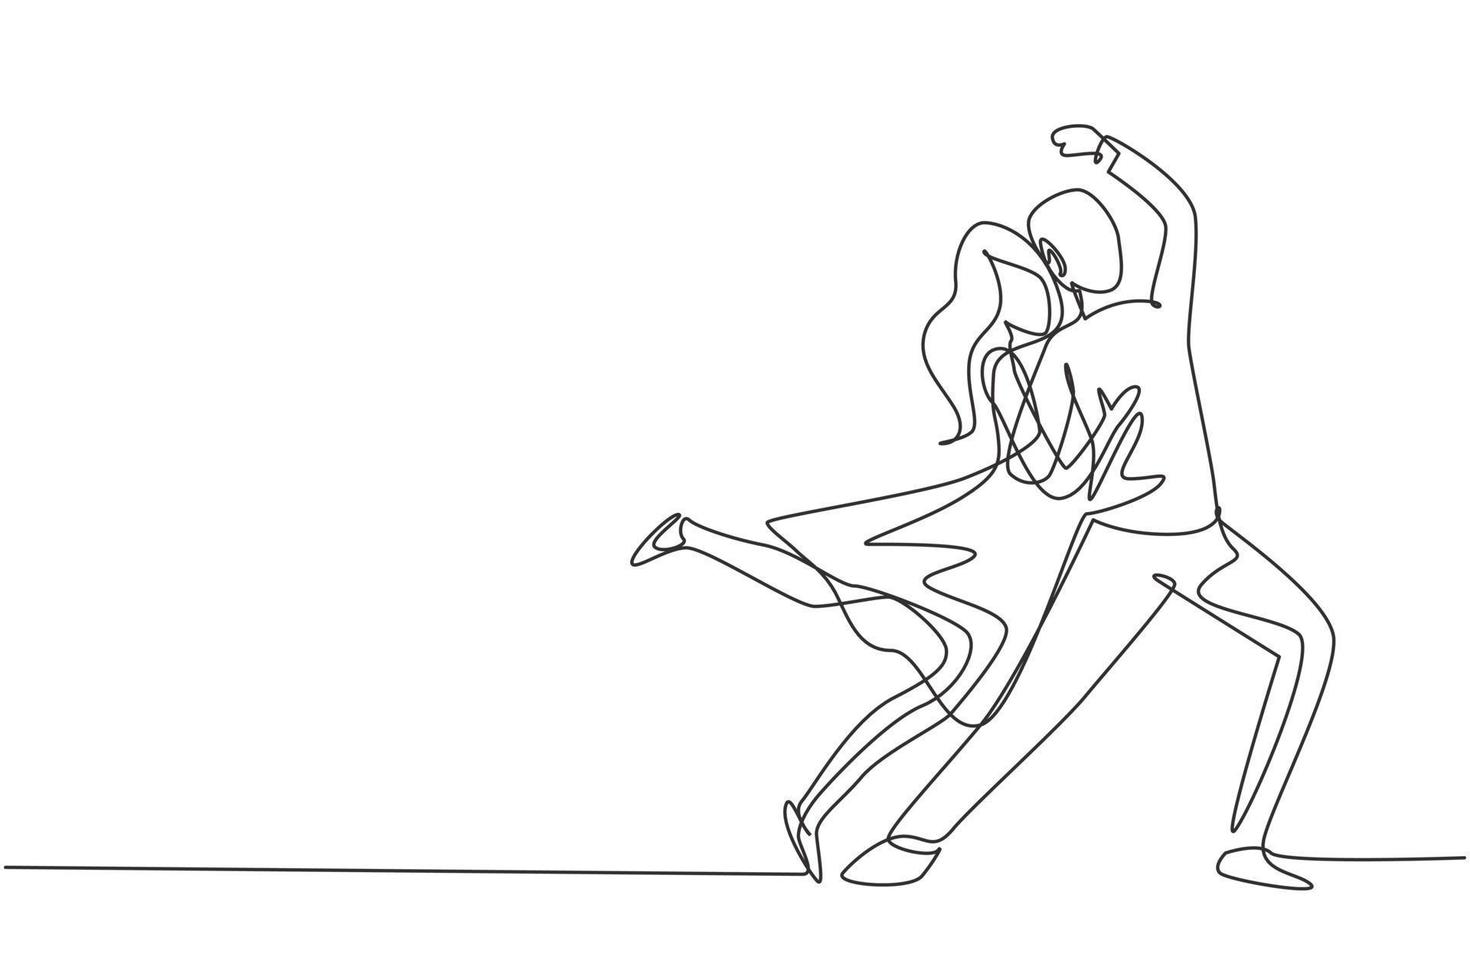 enkele één lijntekening man en vrouw die dans uitvoeren op school, studio, feest. mannelijke en vrouwelijke personages tango dansen in de nachtclub. moderne doorlopende lijn tekenen ontwerp grafische vectorillustratie vector